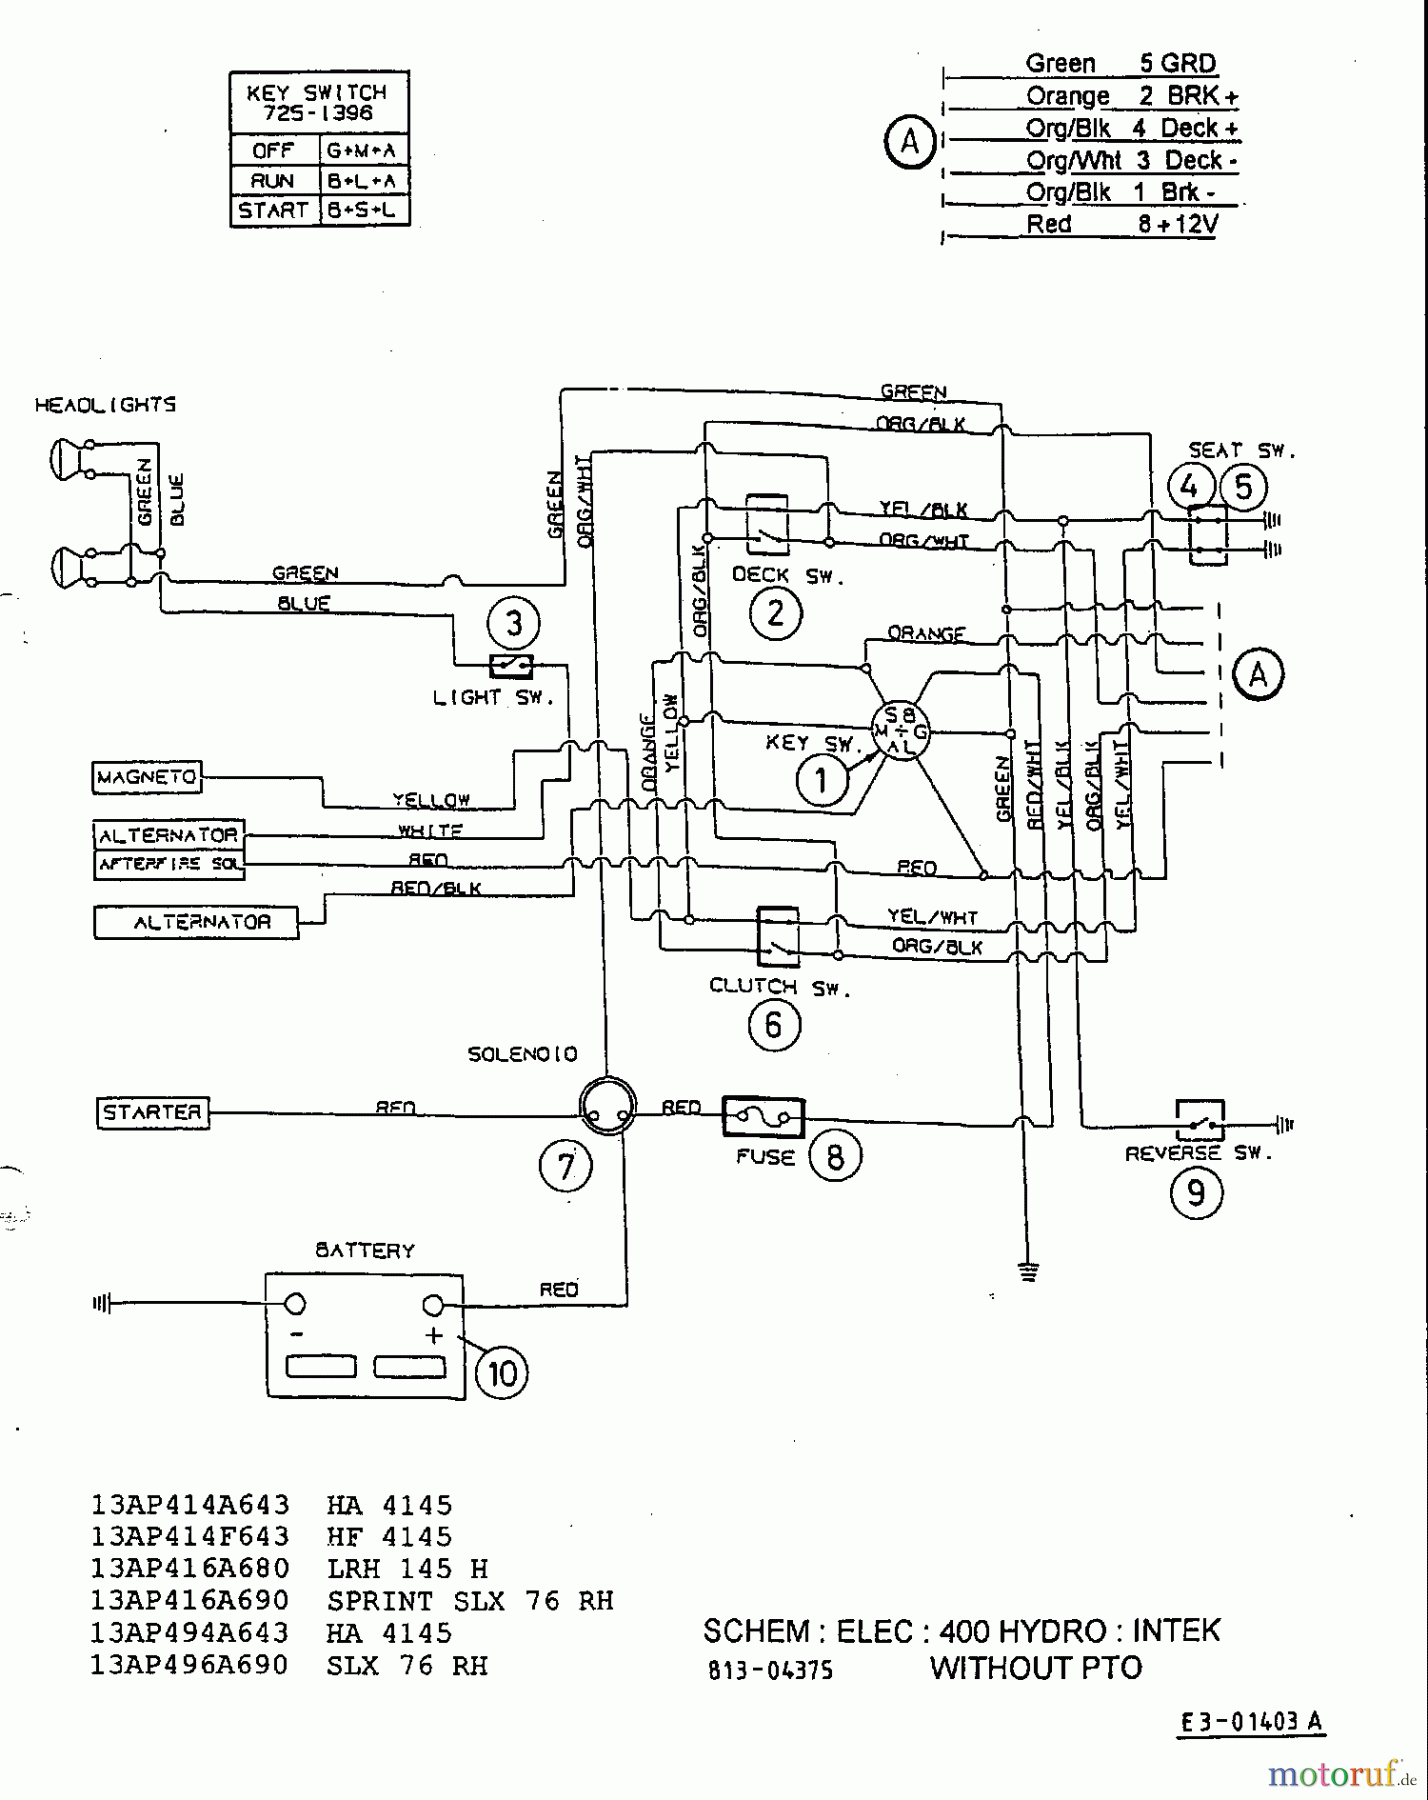  MTD ältere Modelle Rasentraktoren H 145 13AP418F678  (2003) Schaltplan Intek ohne Elektromagnetkupplung